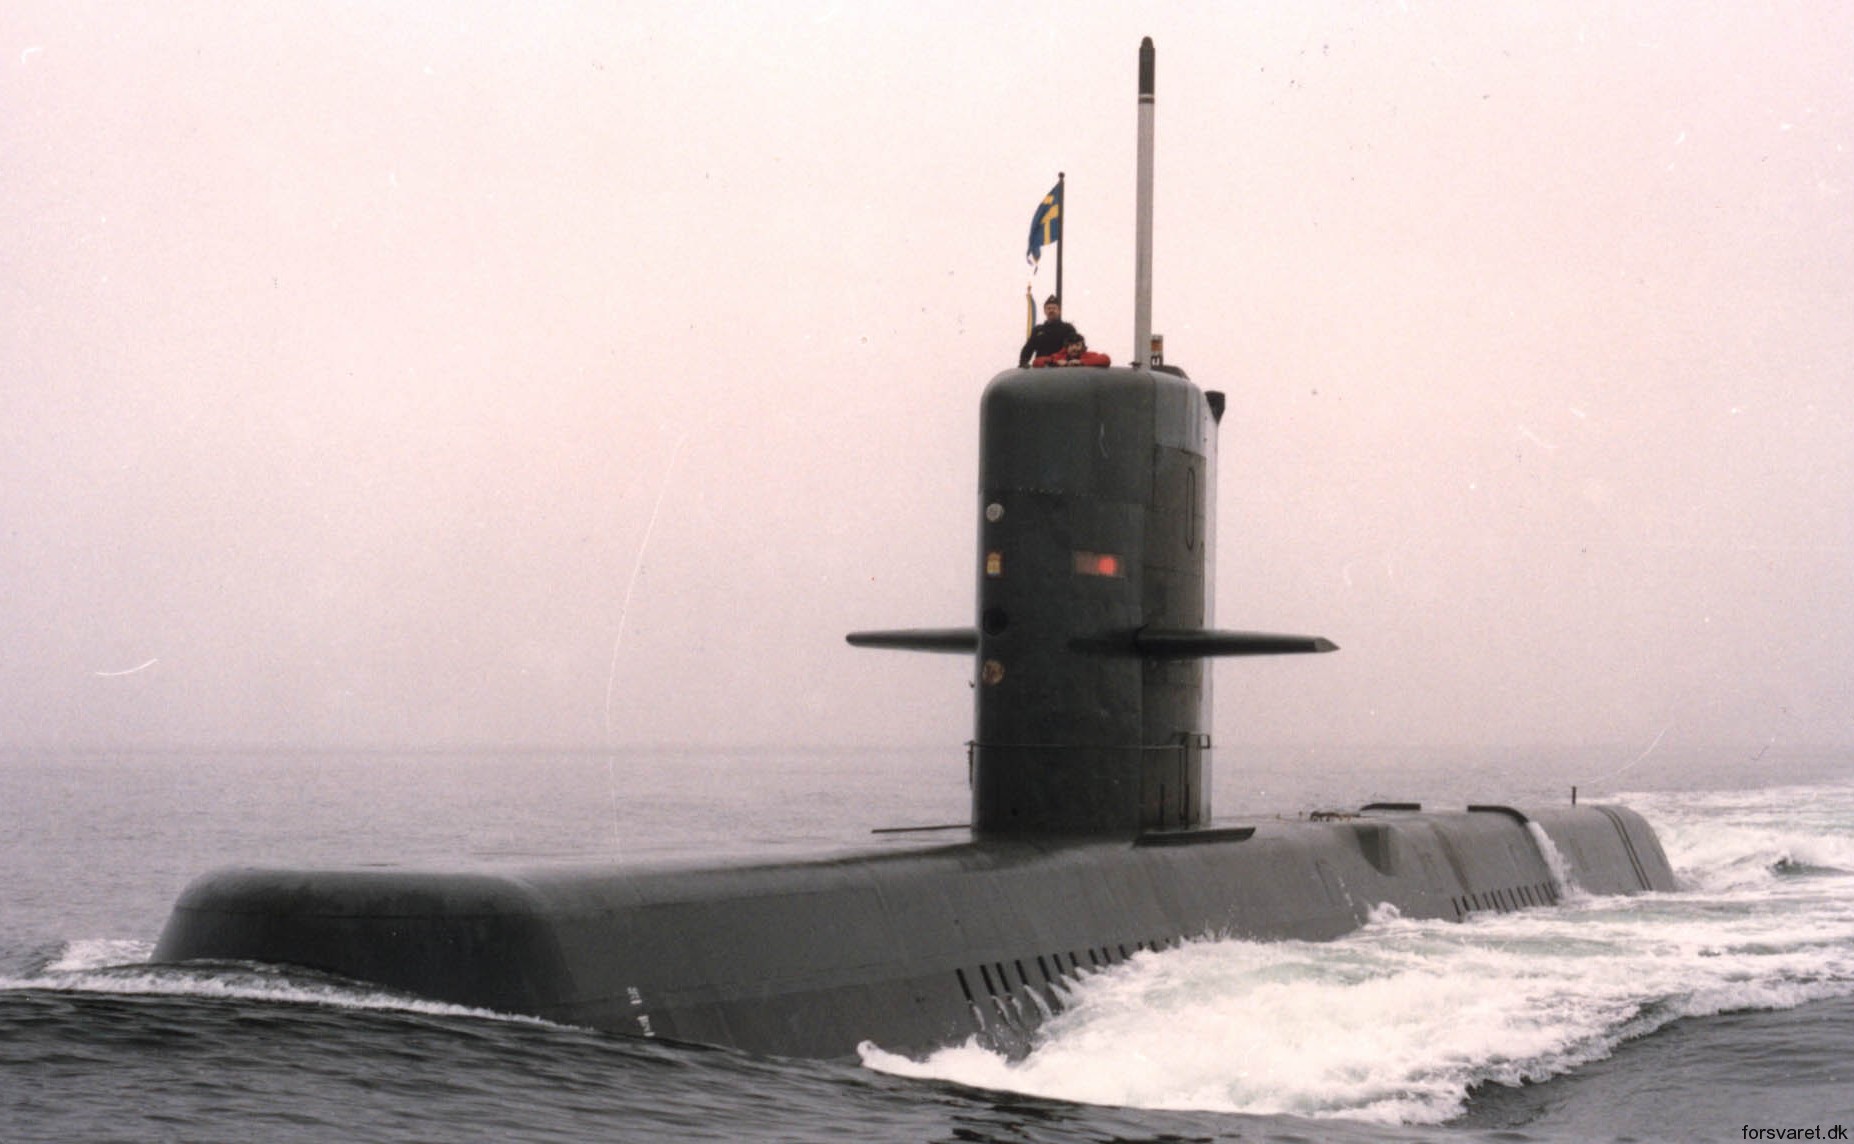 hswms hms nacken näk a14 class submarine ssk swedish navy svenska marinen försvarsmakten kockums 08